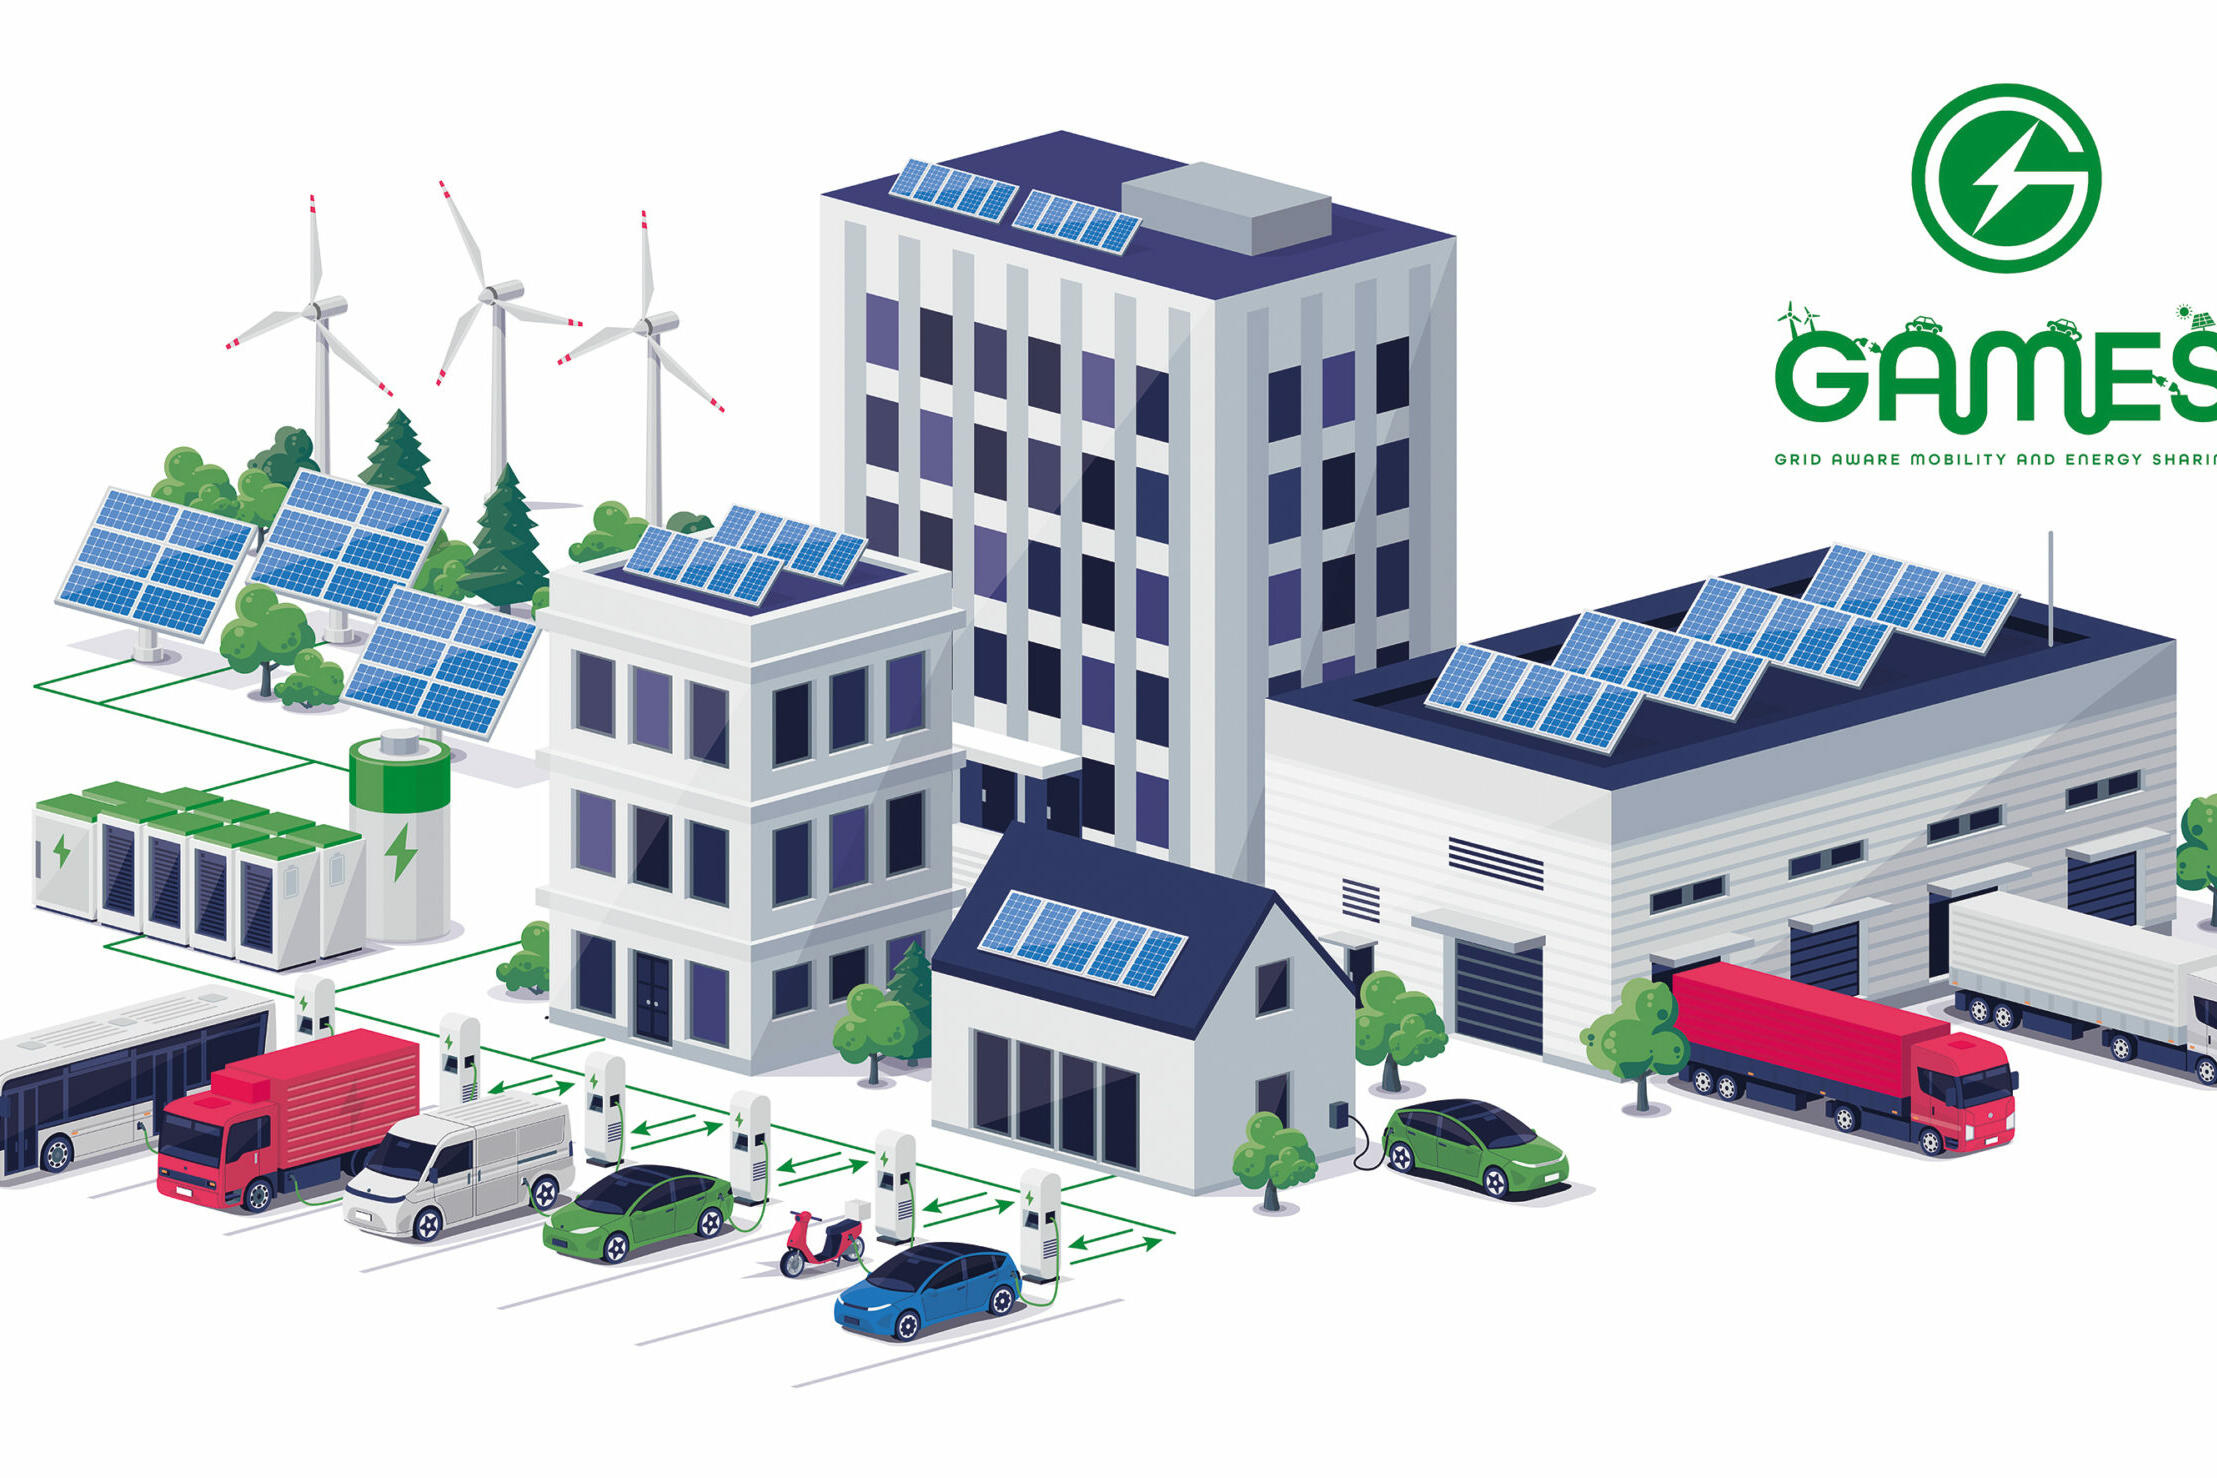 Ideenwettbewerb: E-Fahrzeuge für stabile Stromnetze